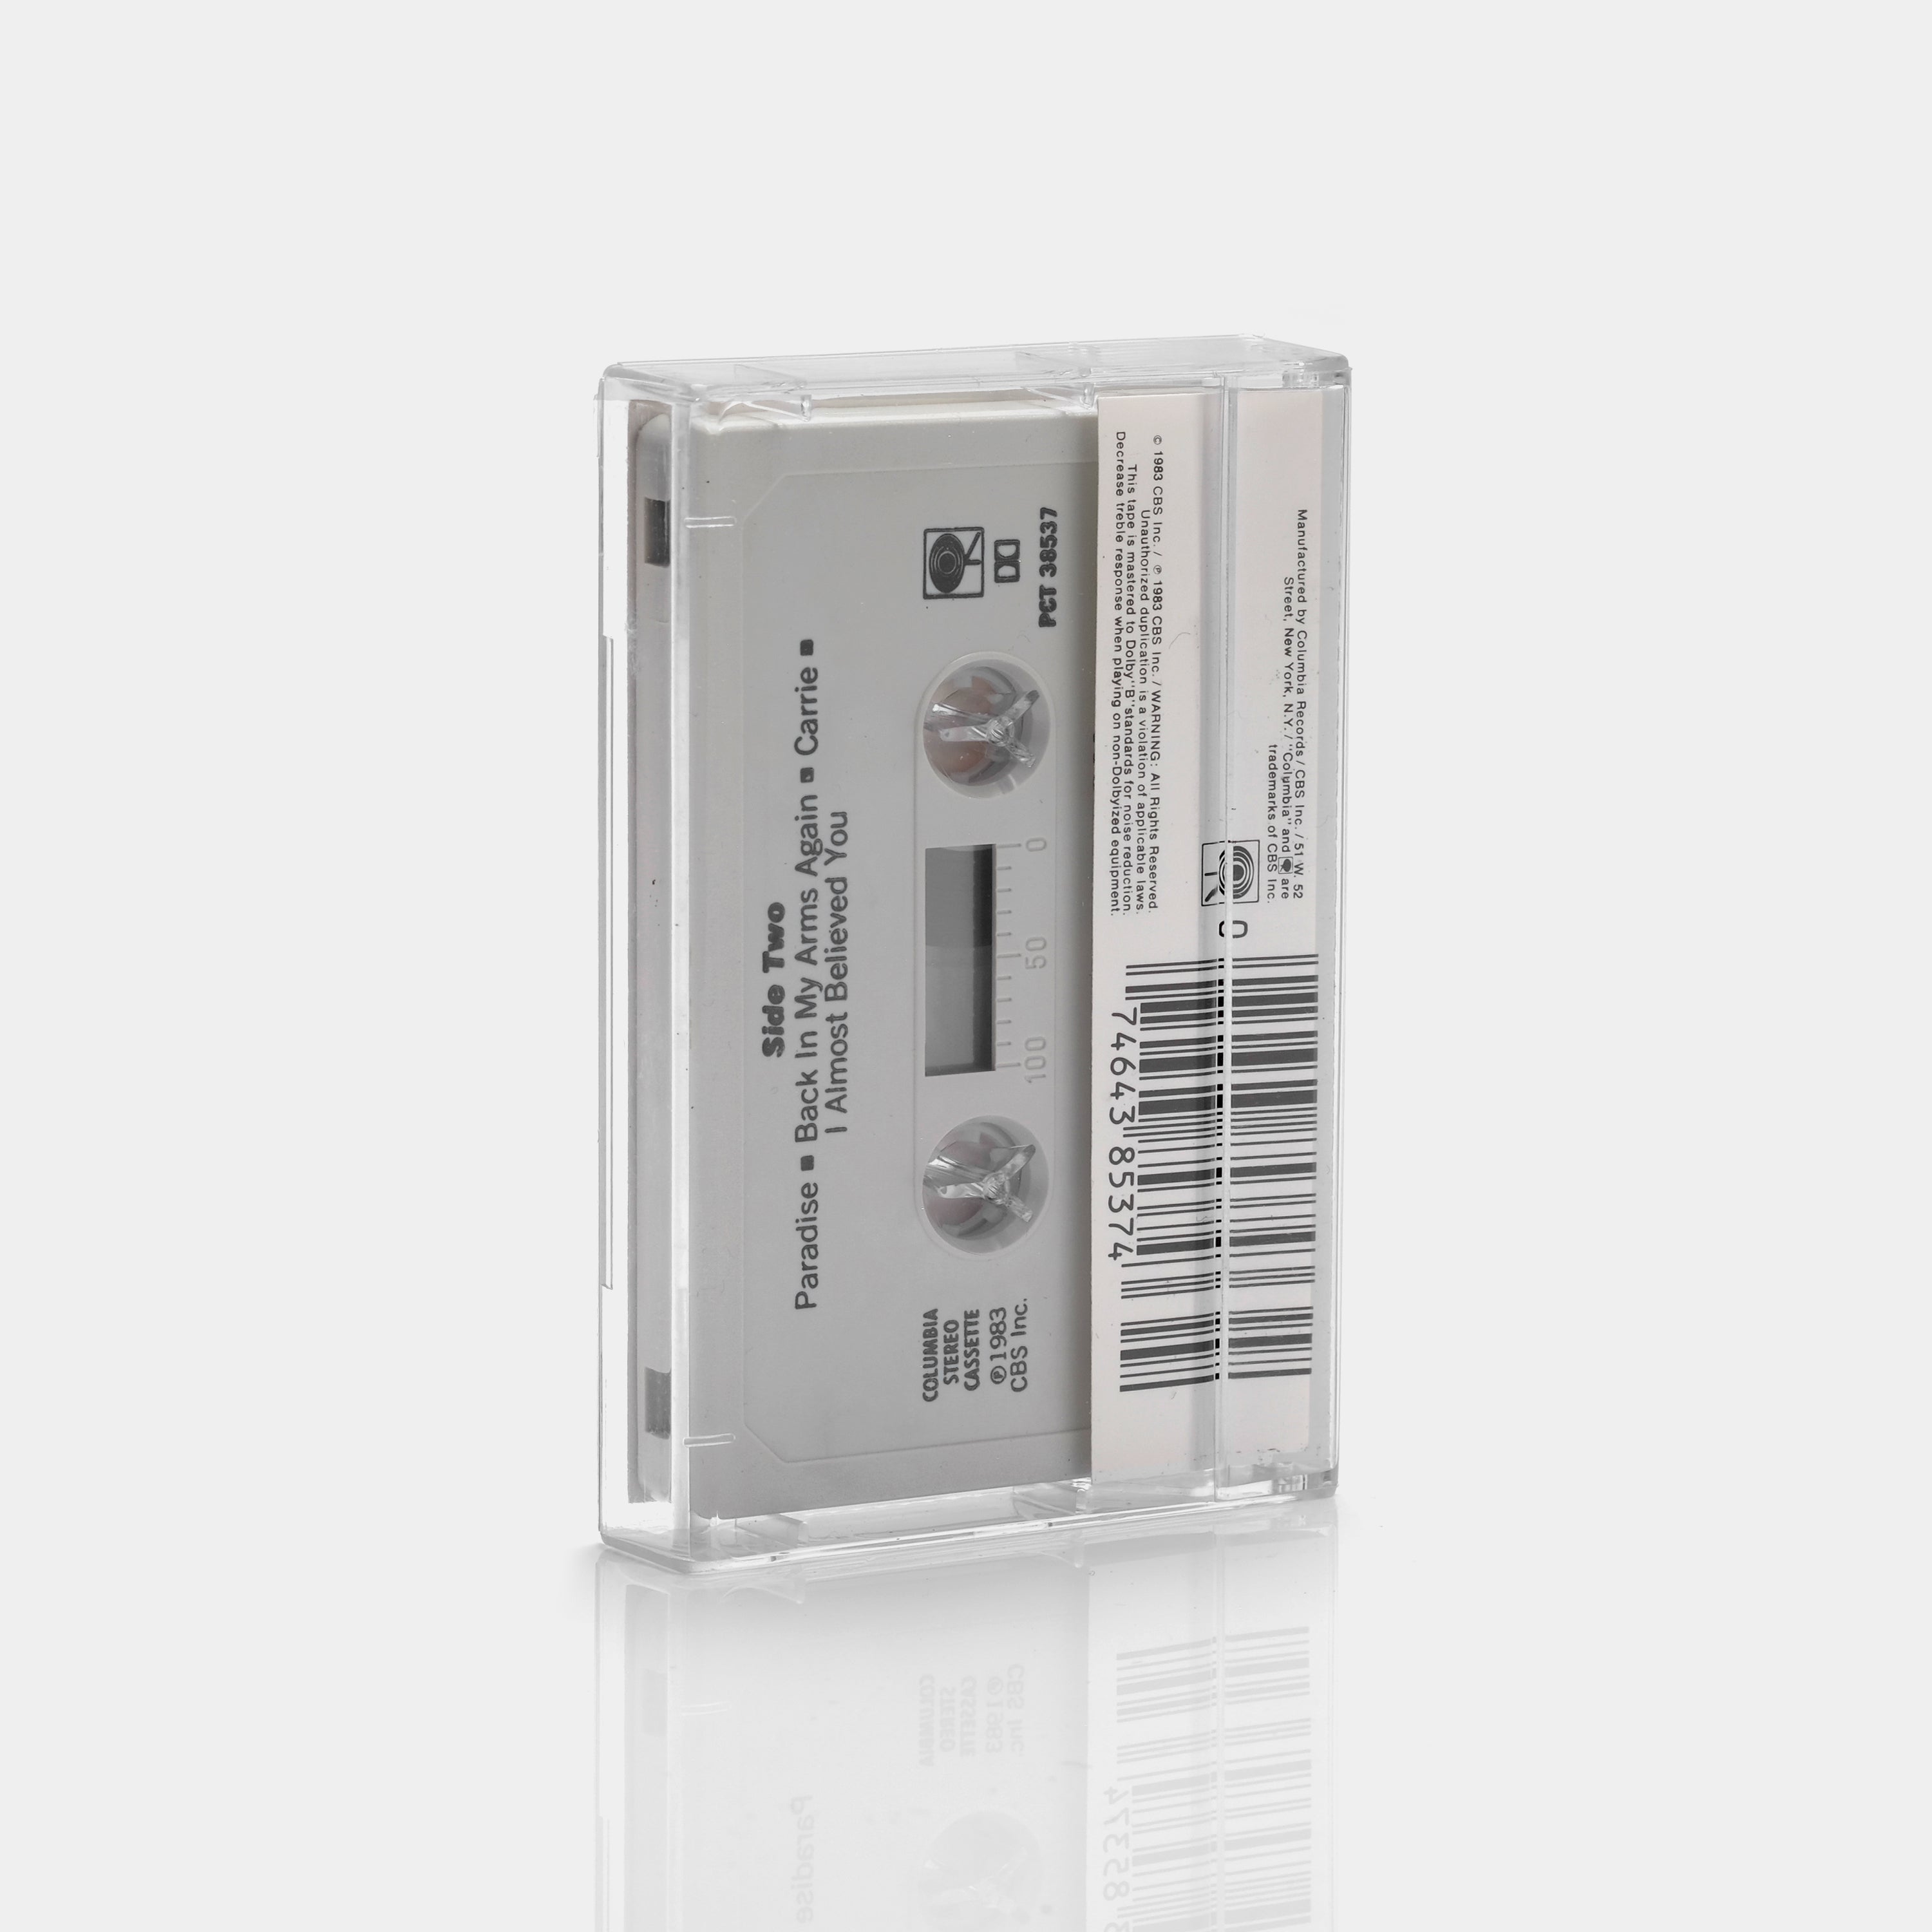 Michael Bolton - Michael Bolton Cassette Tape